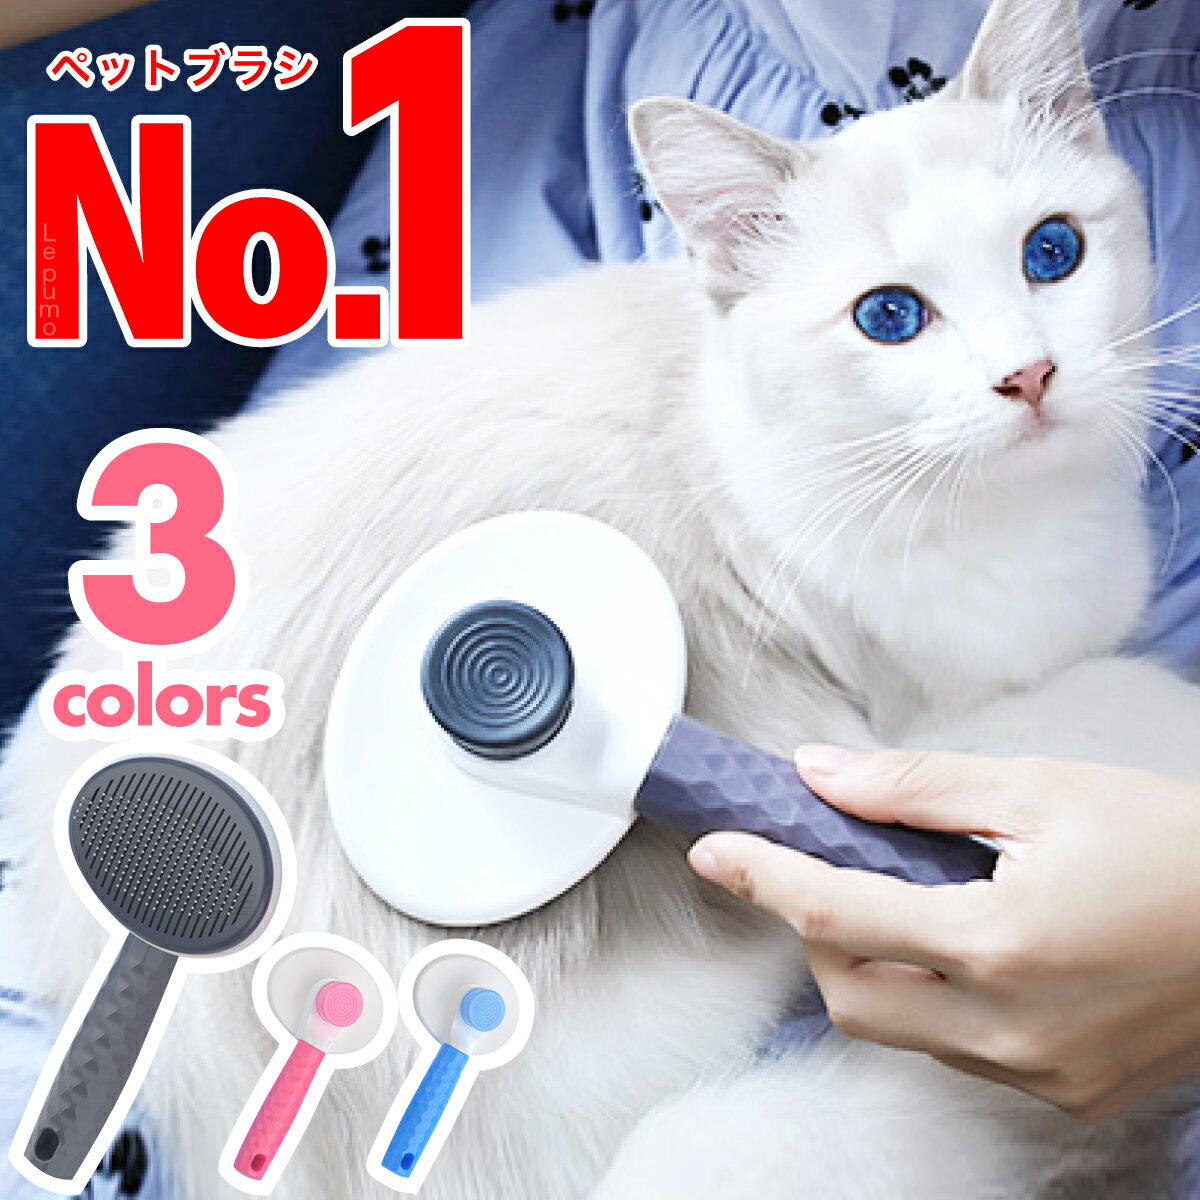 594円 【オープニング 猫 ブラシ 犬 ペットブラシ スリッカーブラシ ペット用品 毛取り ペット用ブラシ